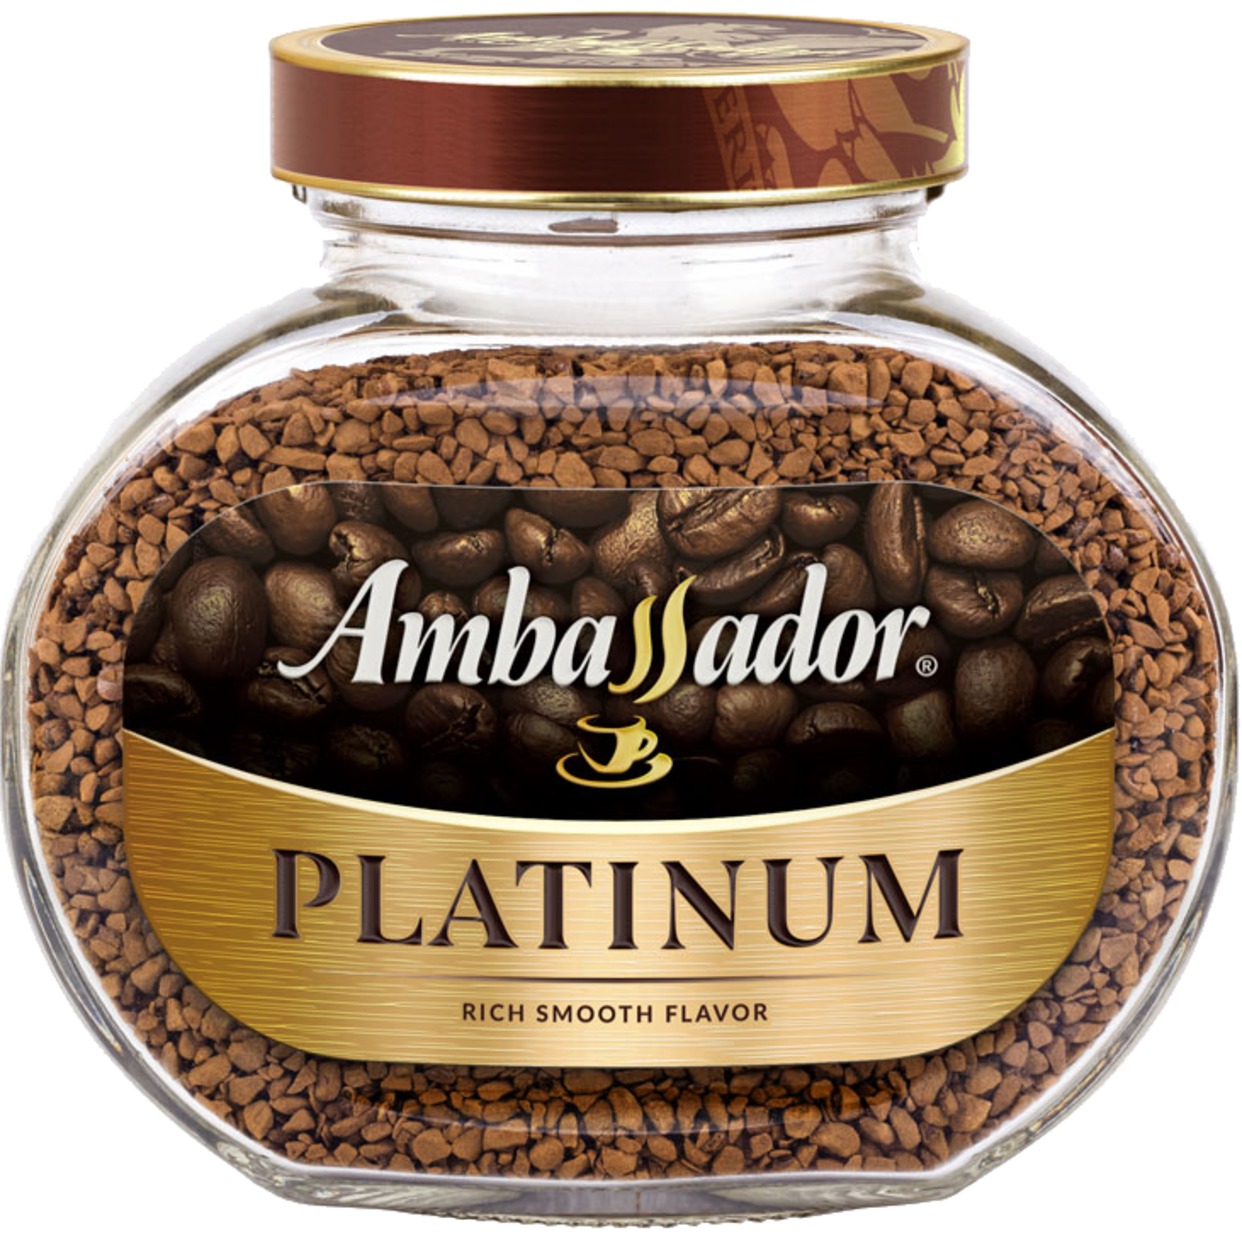 Кофе Ambassador Platinum, растворимый, 95 г по акции в Пятерочке